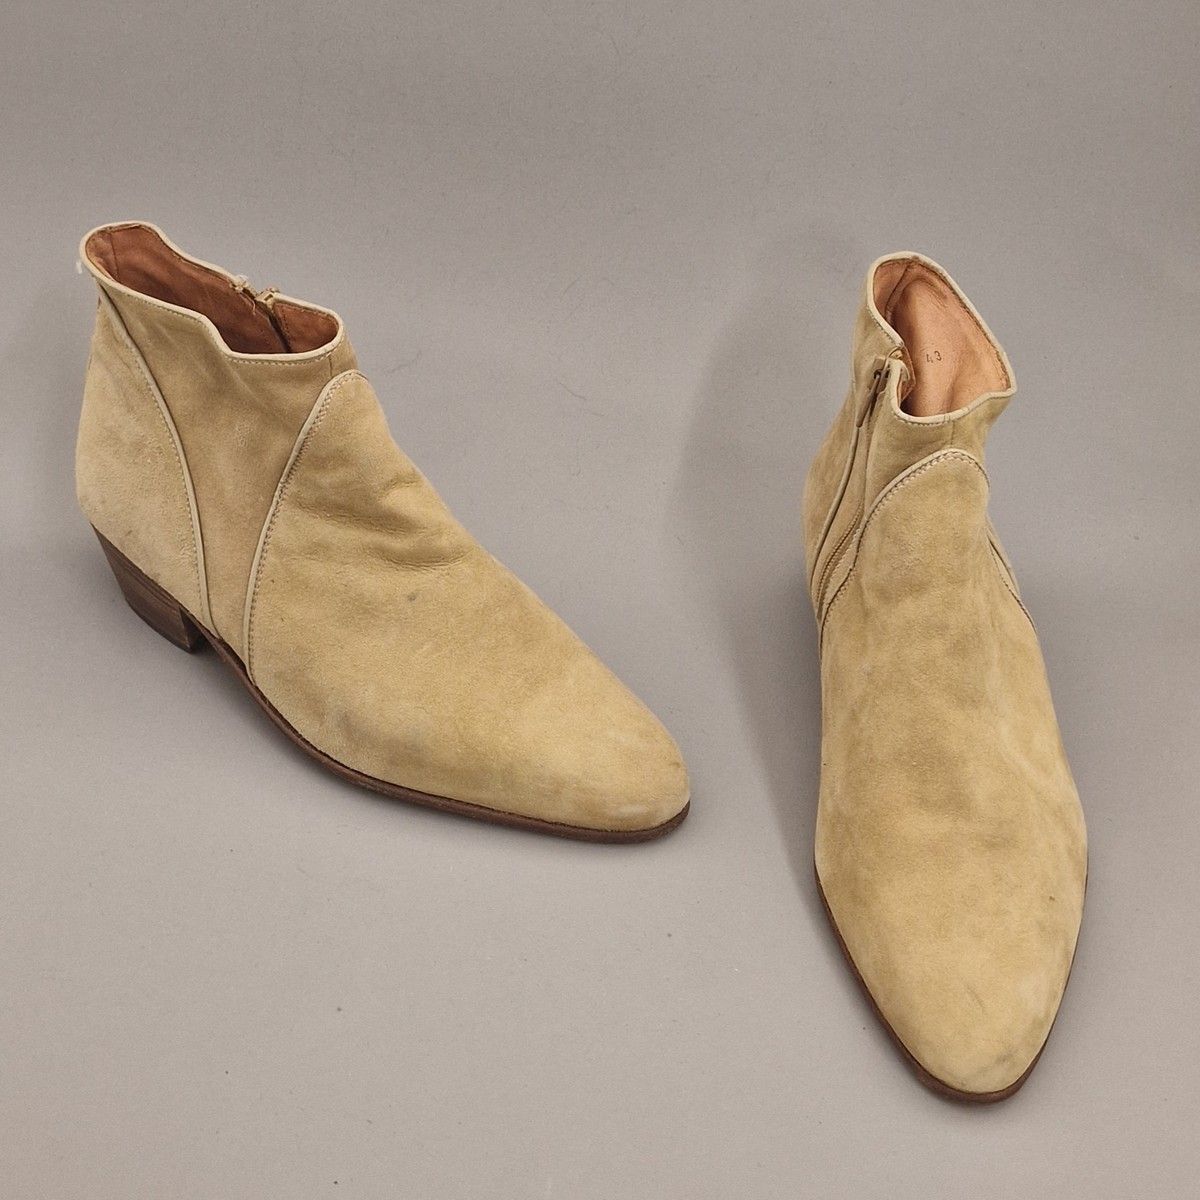 Null 3 双男式靴子或短靴 ： 
- J. M WESTON - 巧克力色带绑带真皮踝靴 - S. 7.5（磨损，橡胶垫，脚趾磨平） 
- ERCOLUS &hellip;